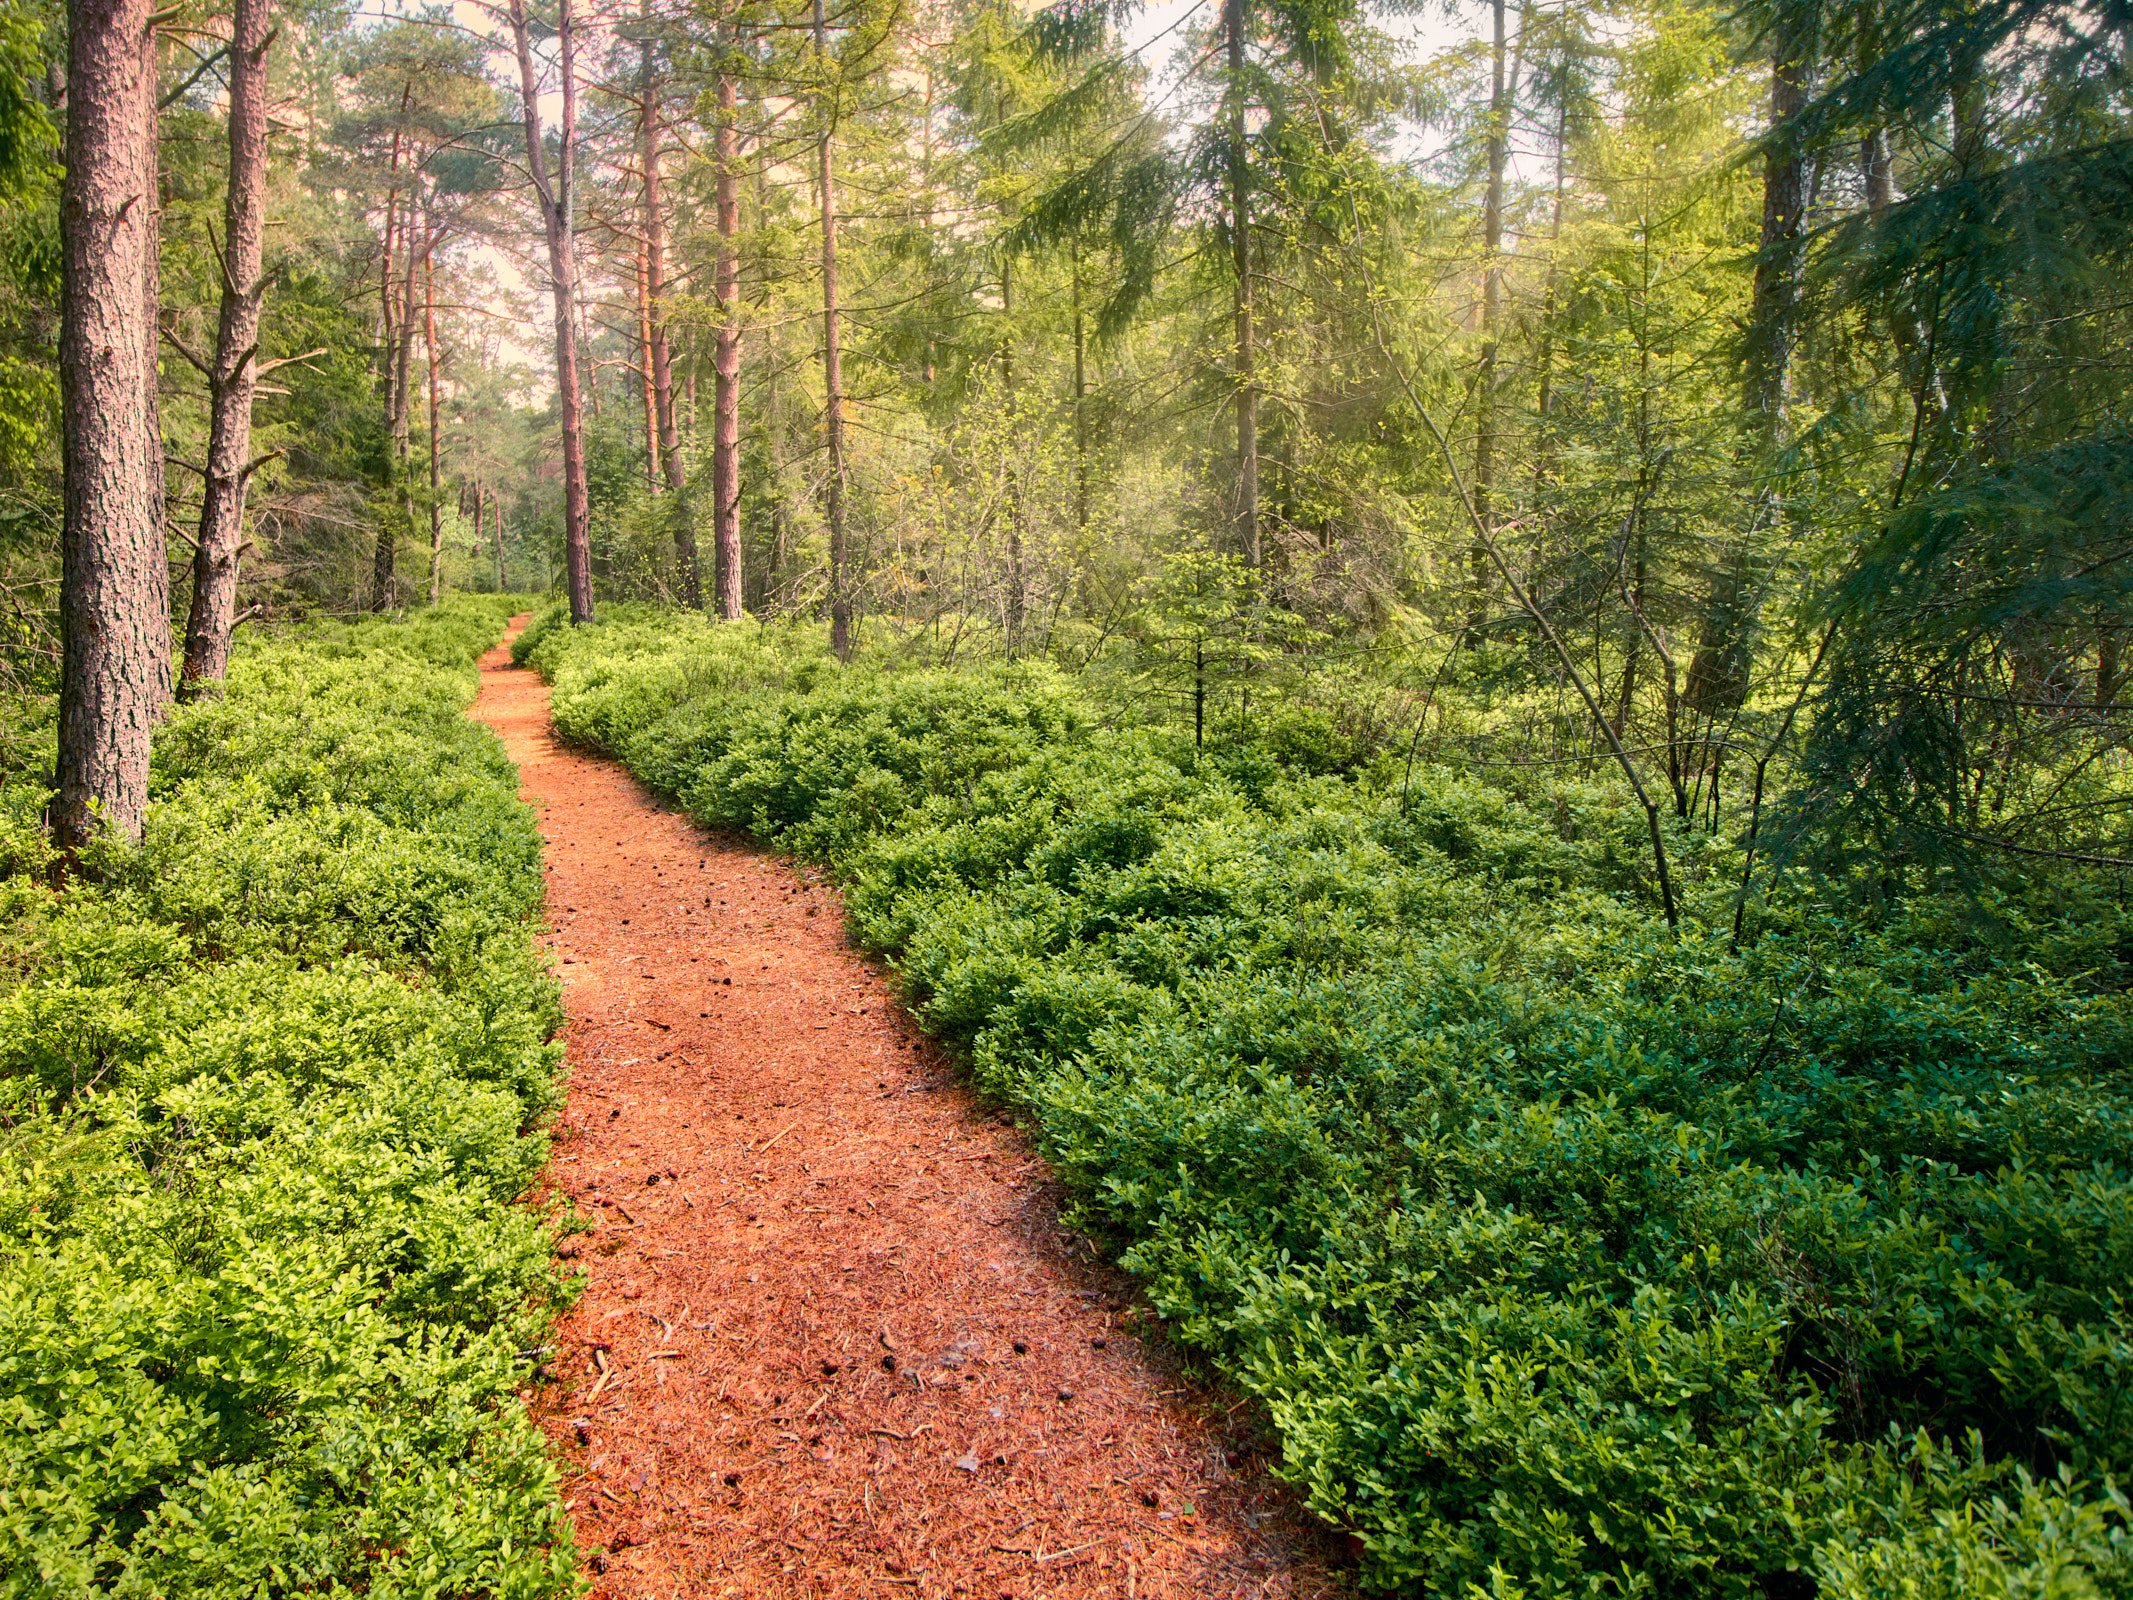 Weg, dicht mit roten Kiefernnadeln bedeckt der durch einen grünen Wald mit dichter, grüner Bodenbewachsung führt